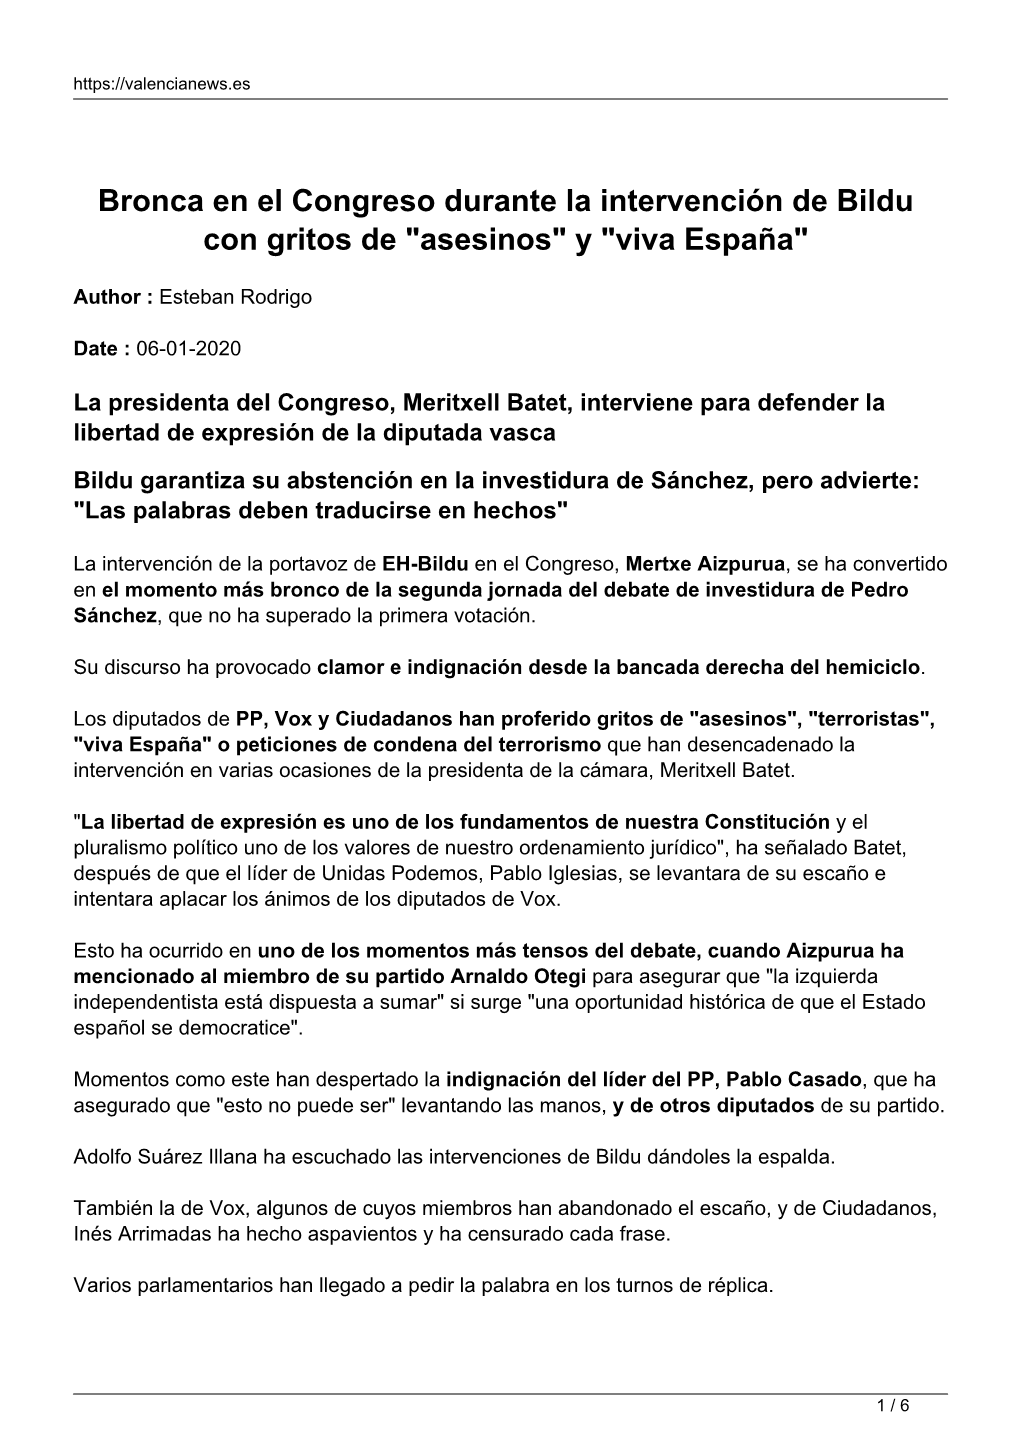 Bronca En El Congreso Durante La Intervención De Bildu Con Gritos De "Asesinos" Y "Viva España"